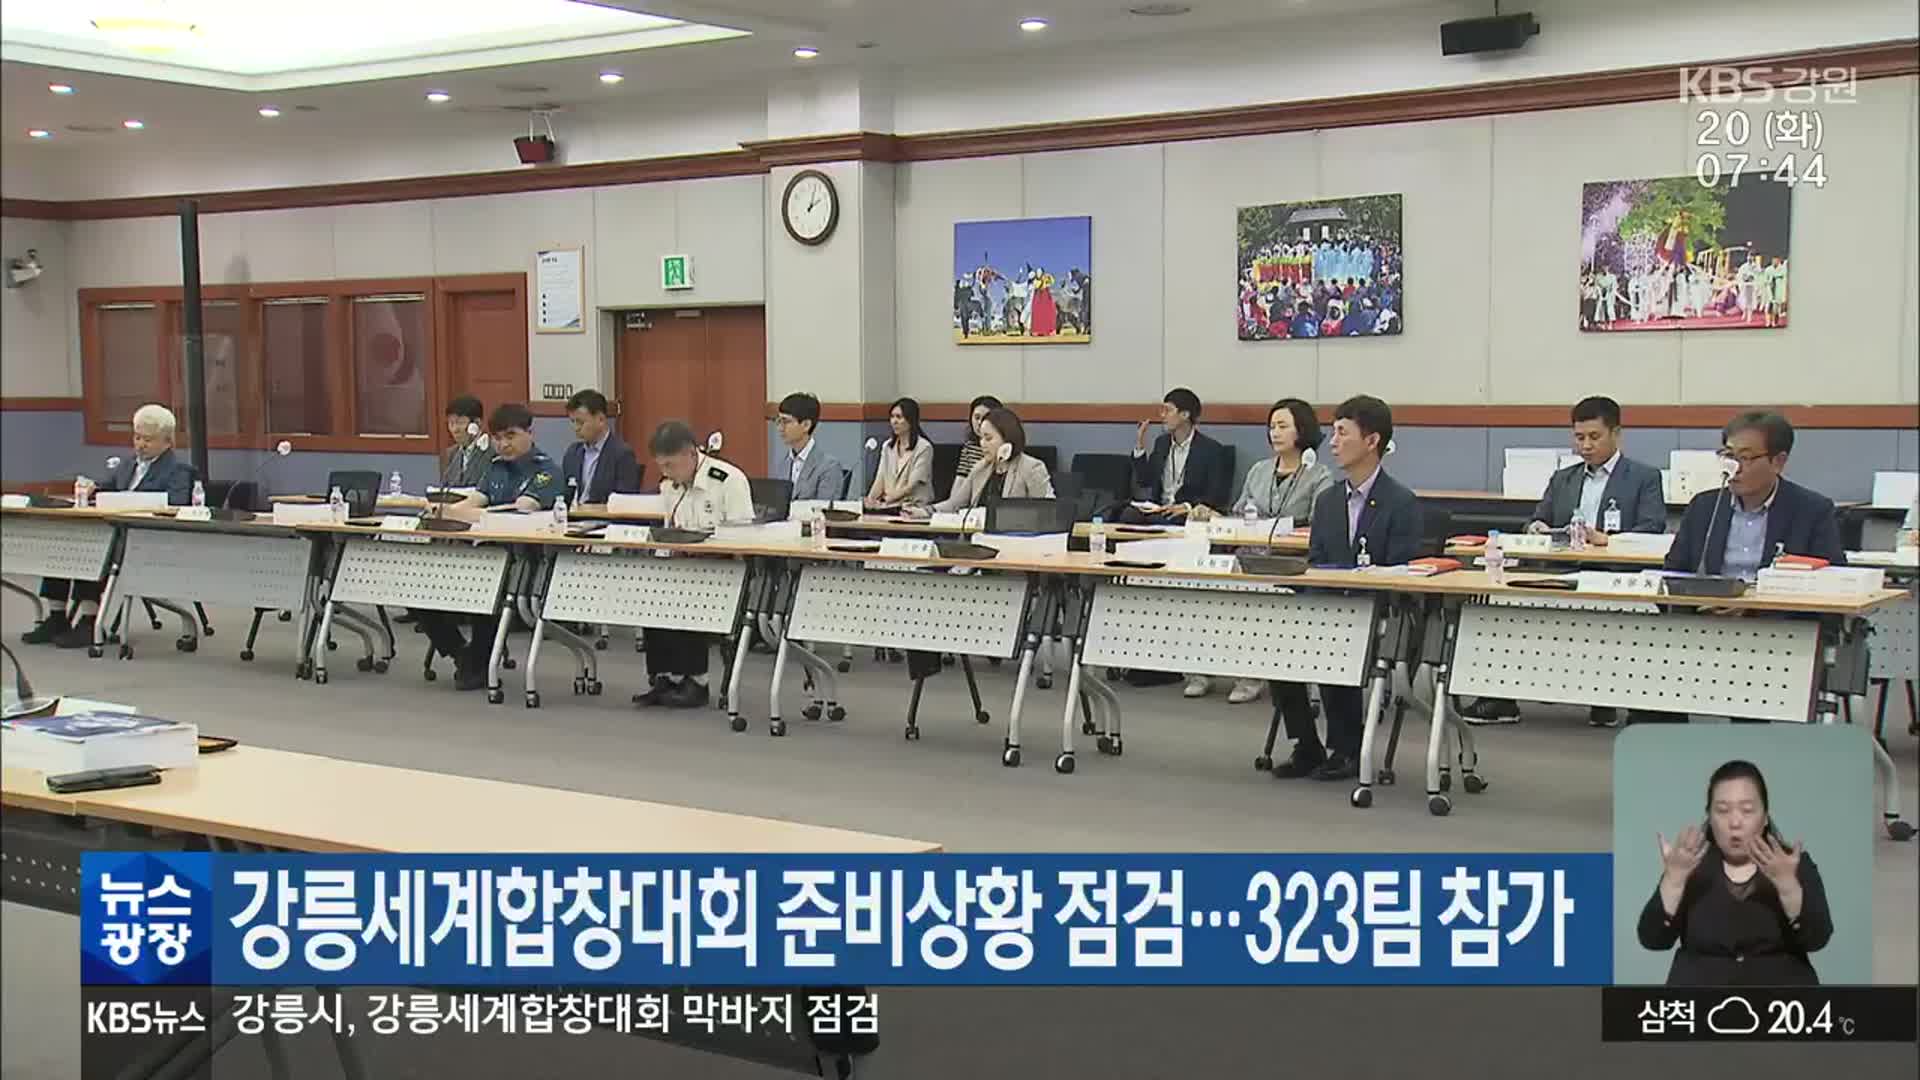 강릉세계합창대회 준비상황 점검…323팀 참가